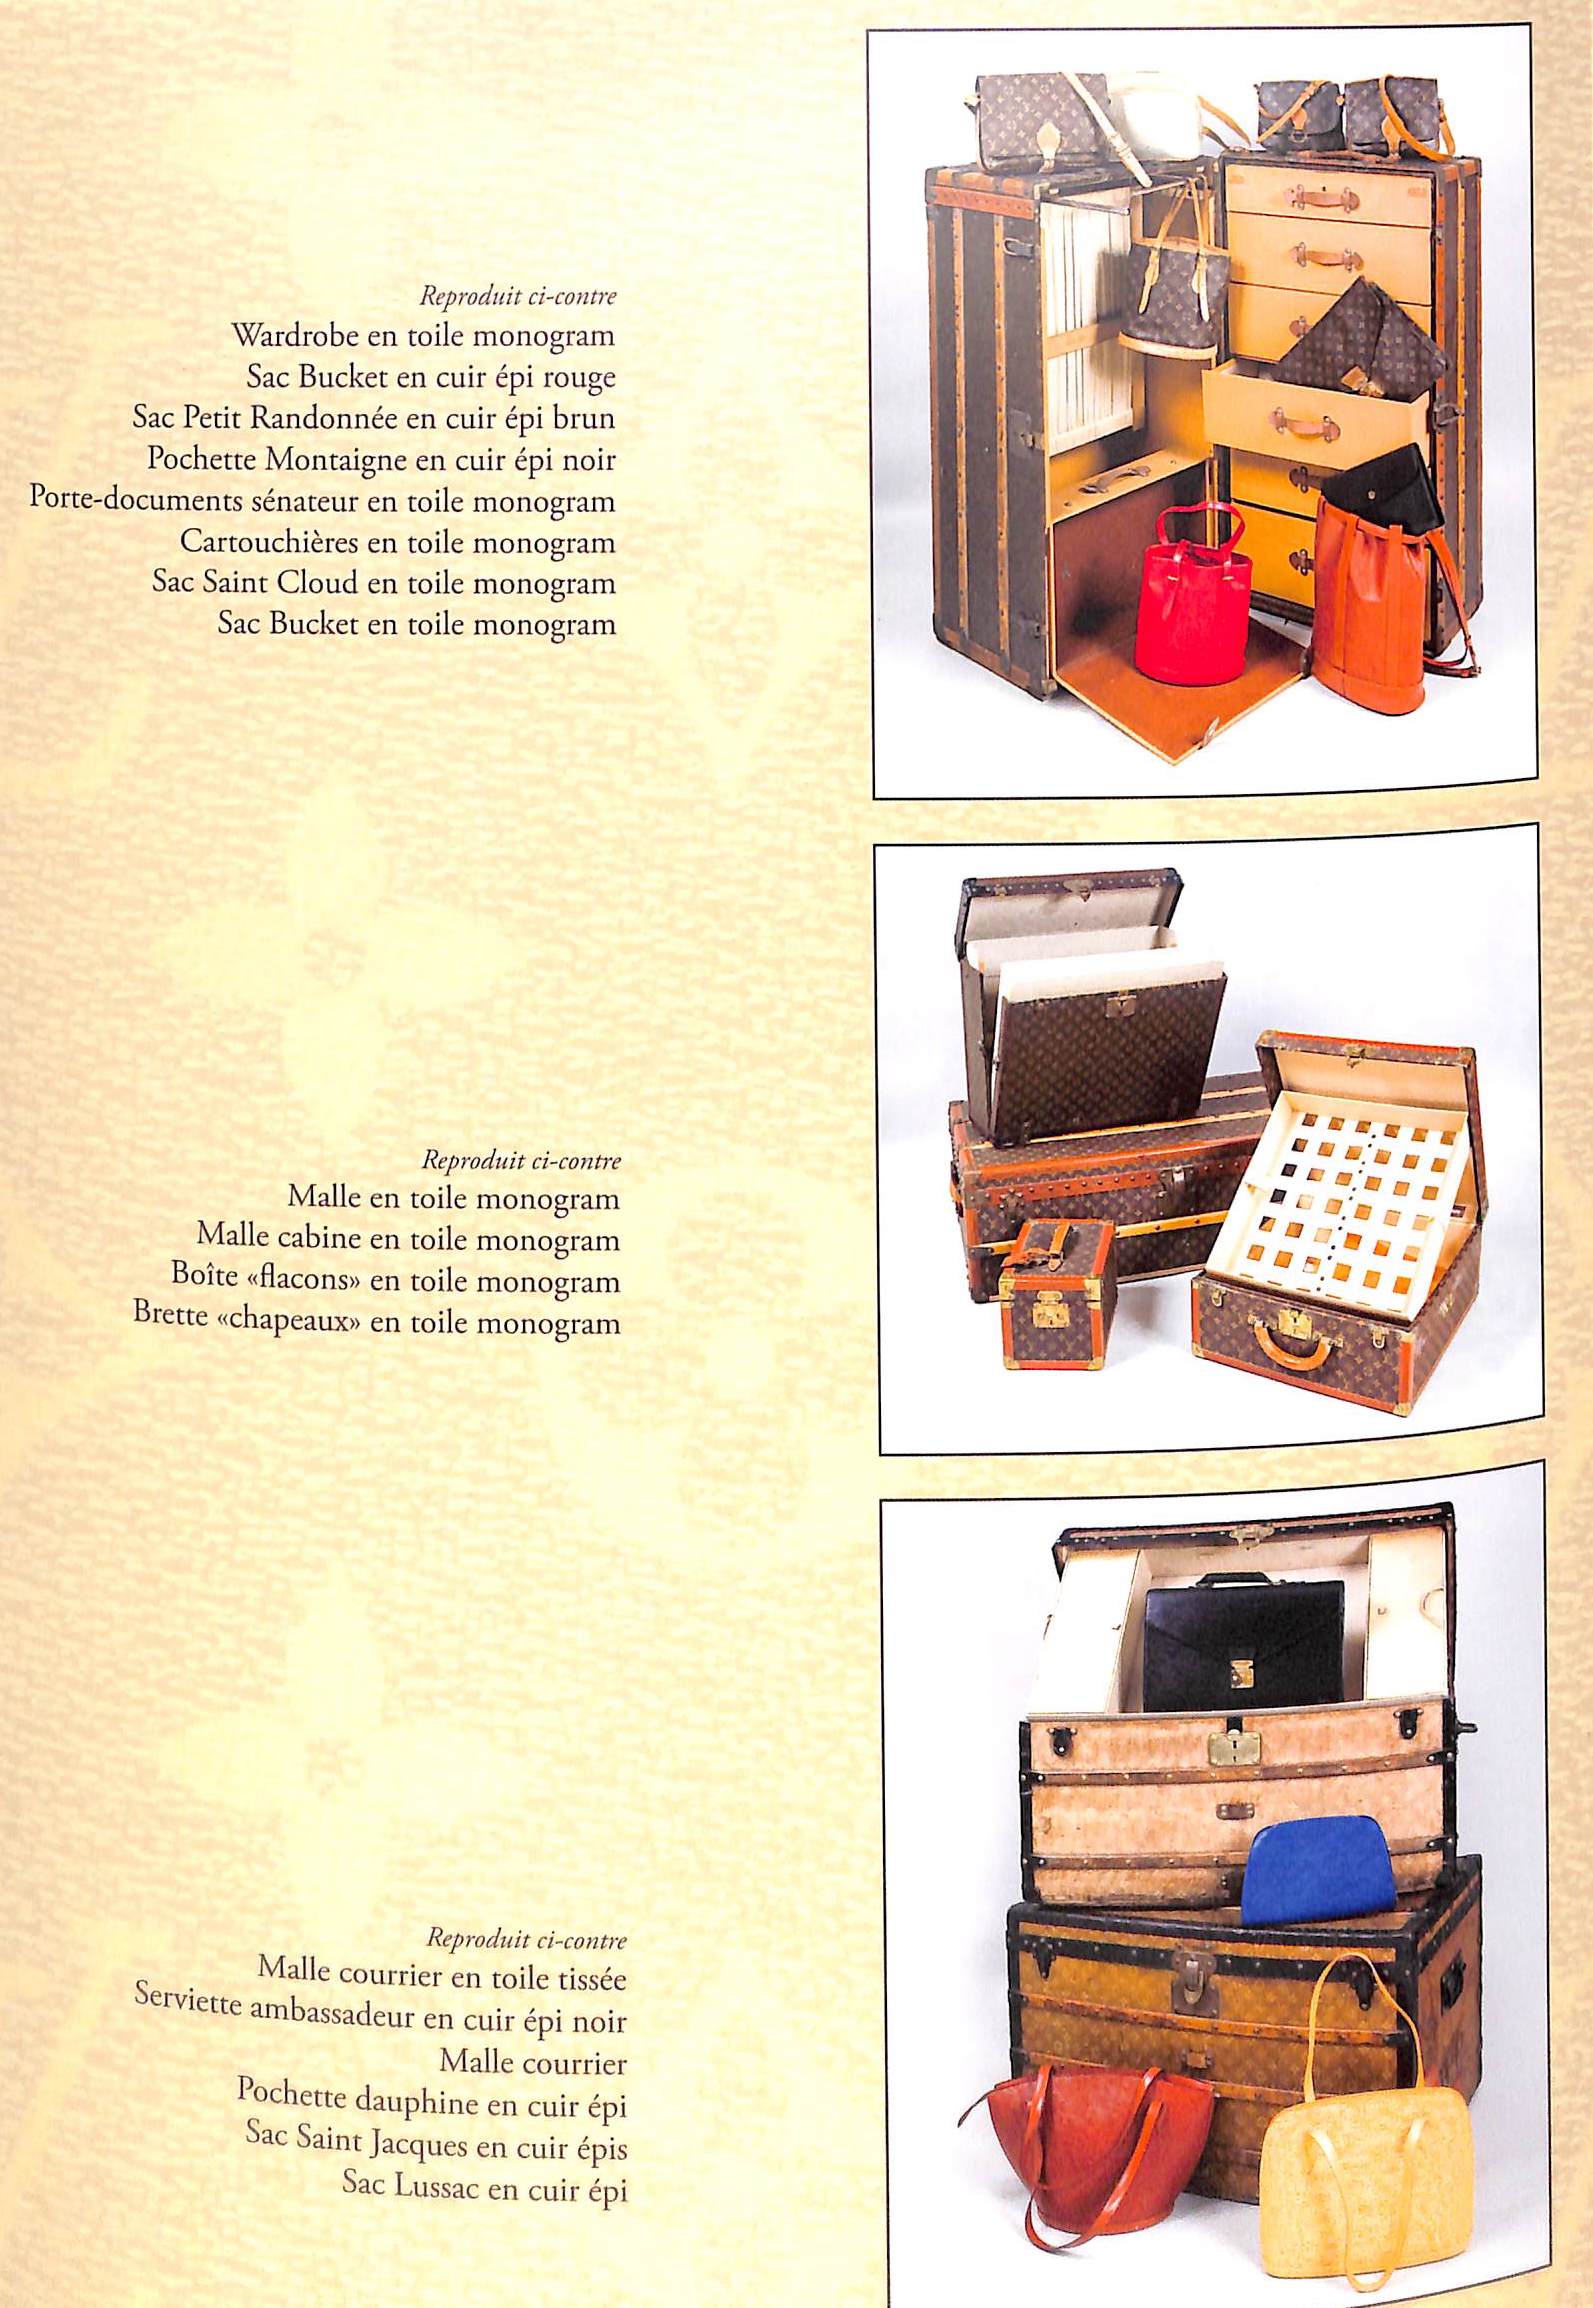 Louis Vuitton Paris Auction Catalog 2009